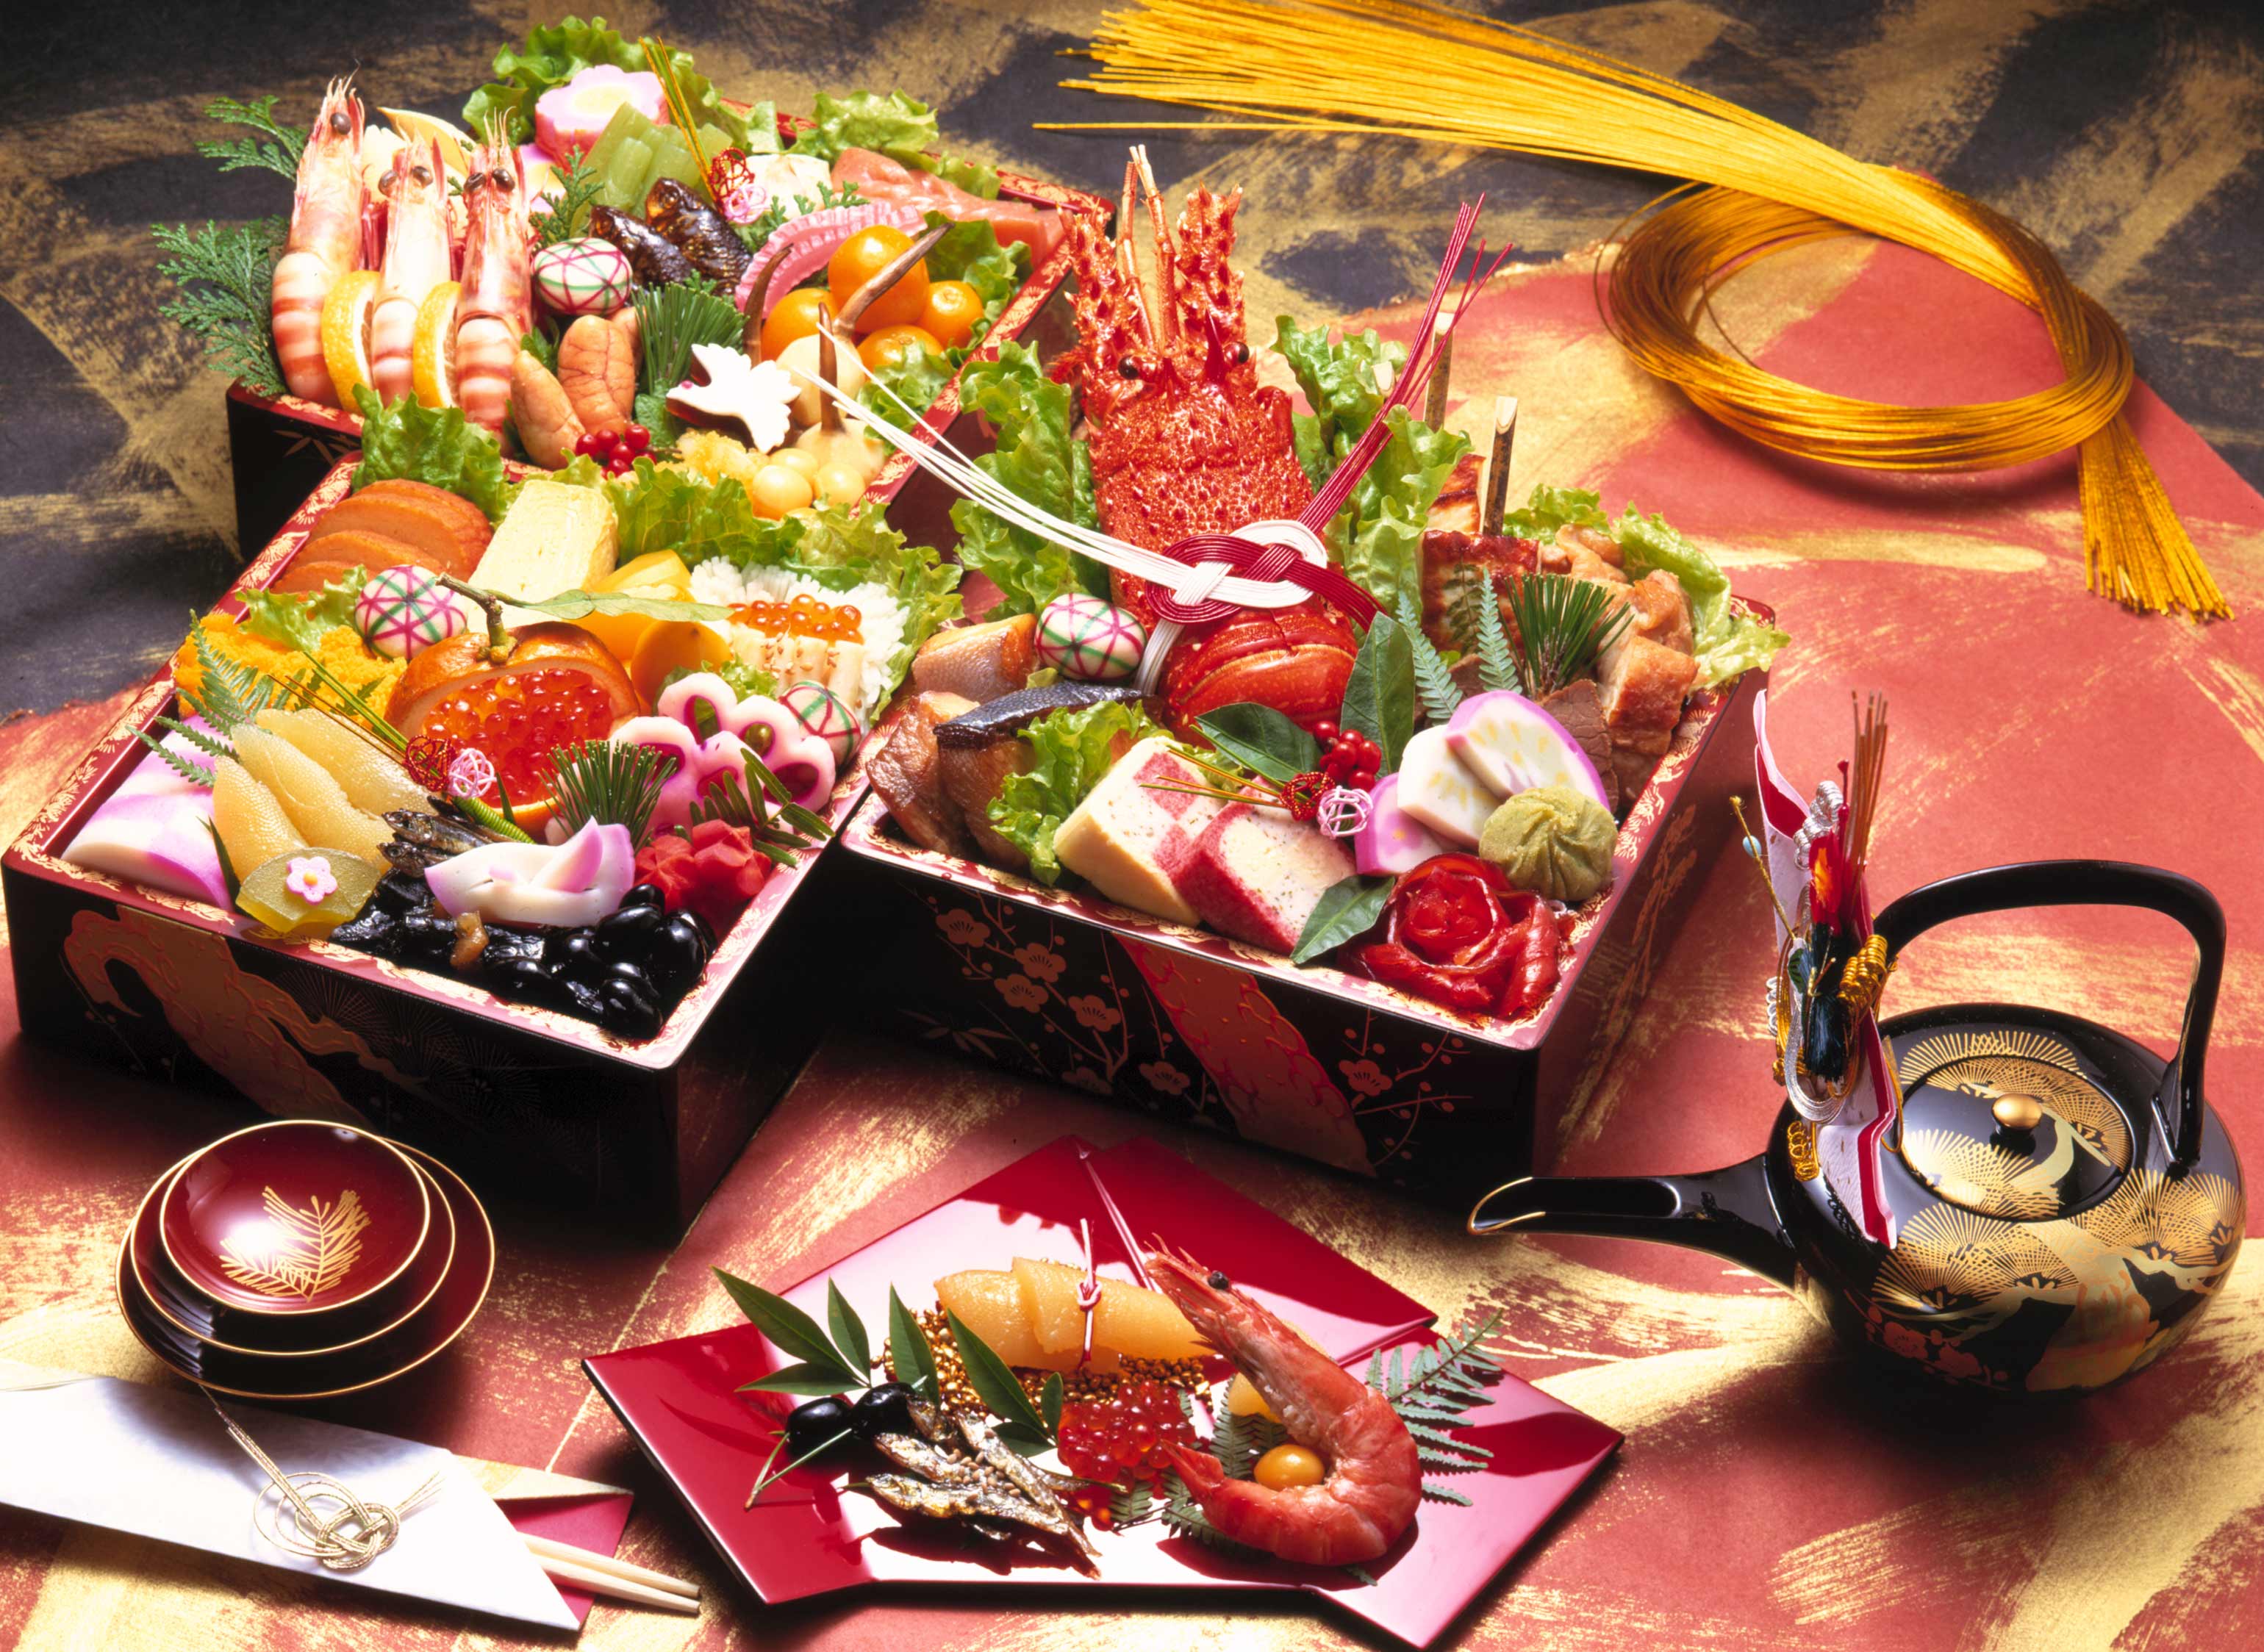 Các món ăn được chế biến tinh tế từ cá và hải sản